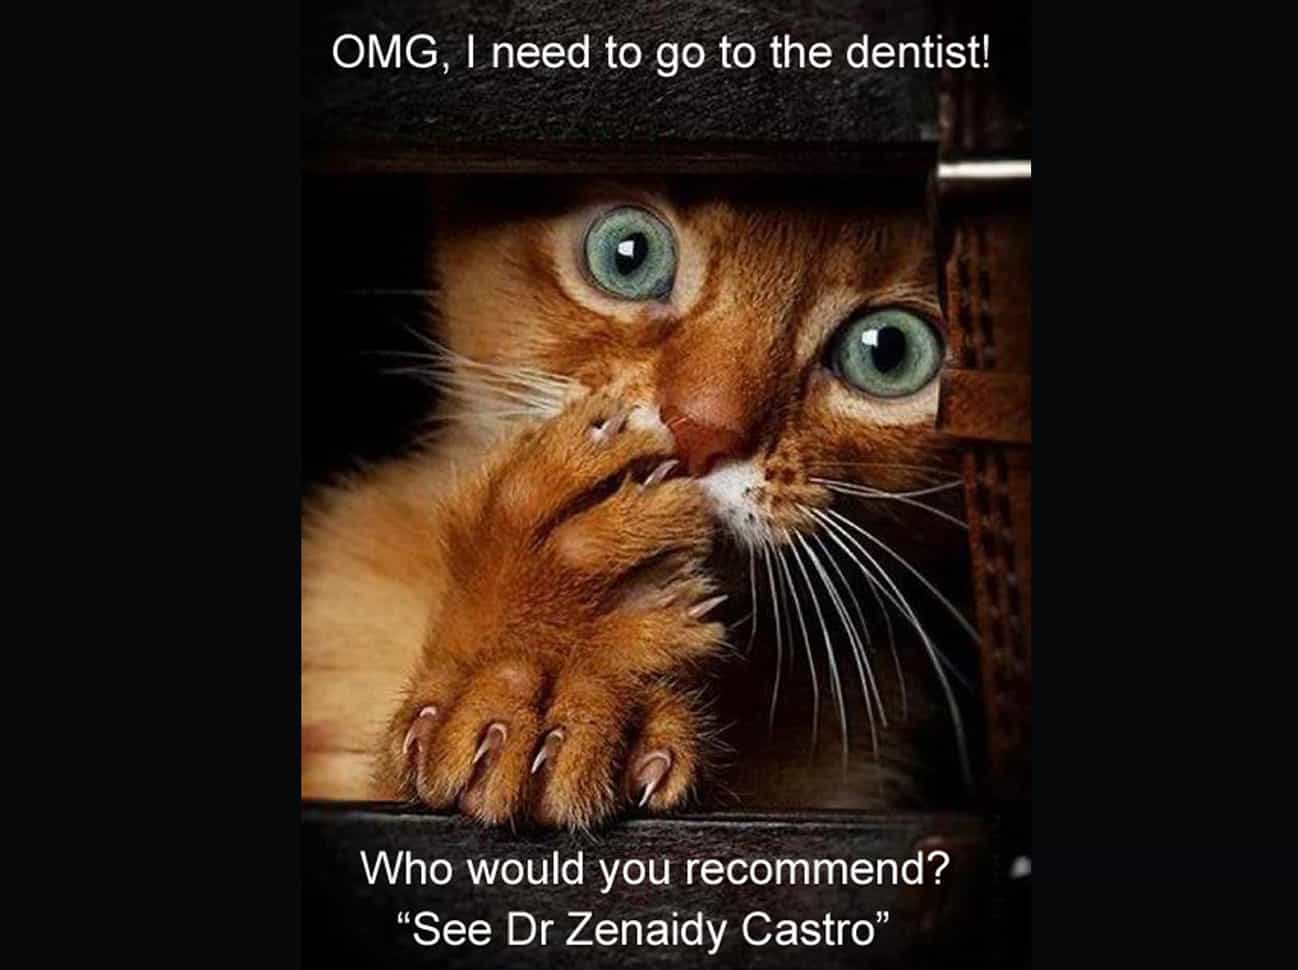  Funny Cute cat memes, Dental Cat memes, Cute Cats photos, Cat lovers